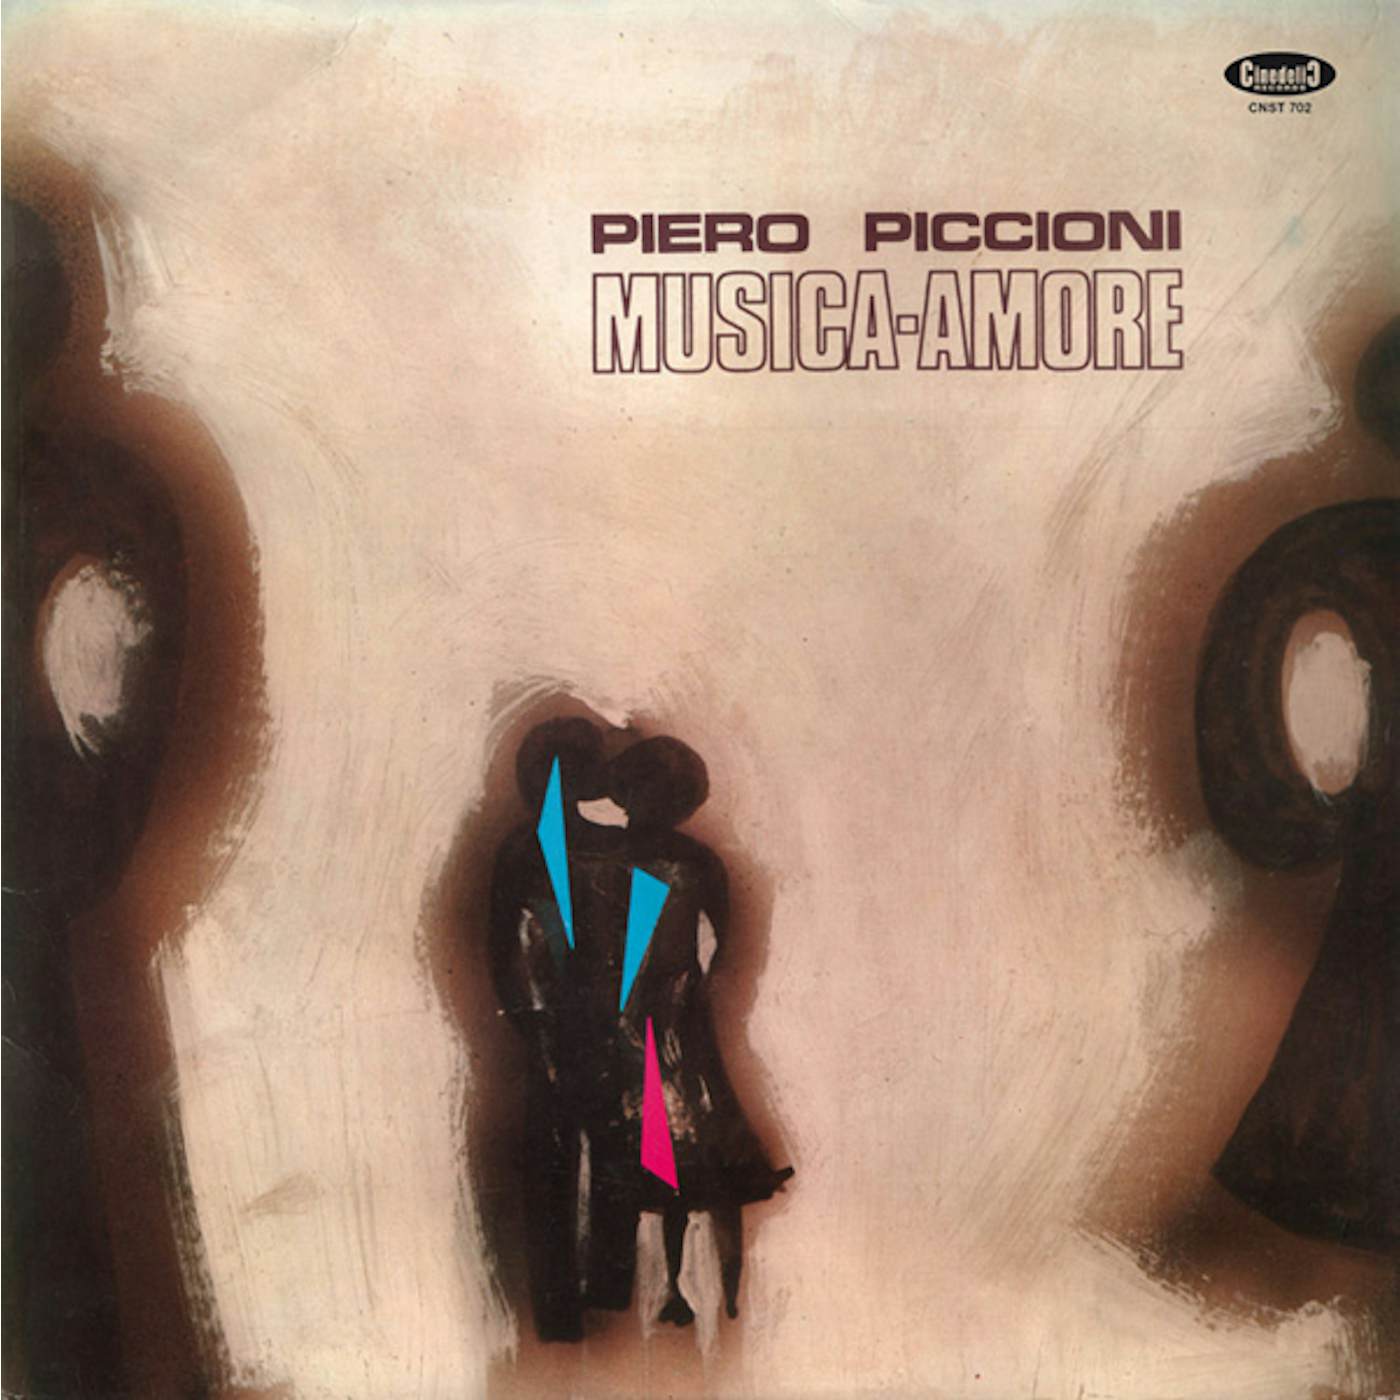 Piero Piccioni MUSICA AMORE - Original Soundtrack Vinyl Record